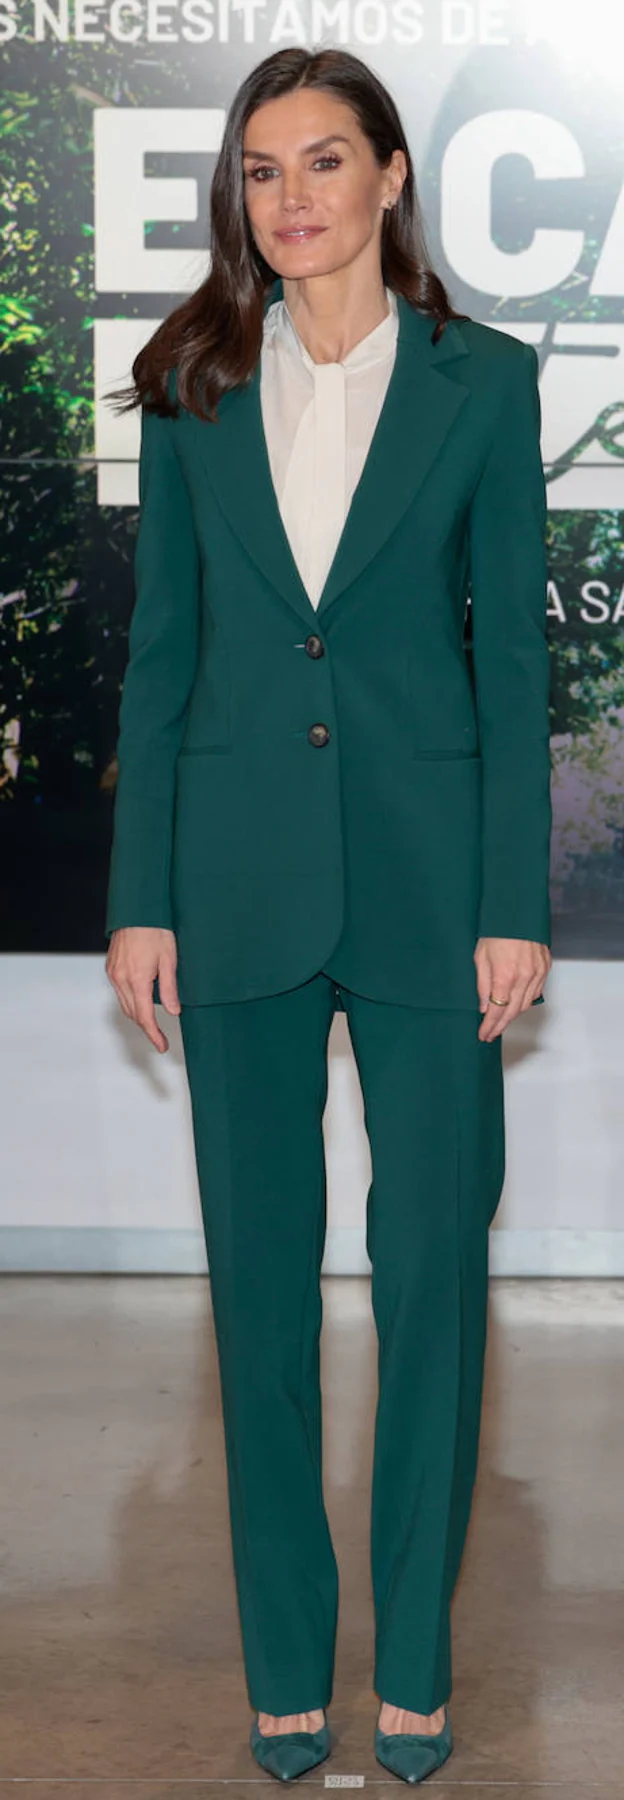 Doña Letizia ha rescatado su traje de chaqueta de Carolina Herrera que estrenó en 2019.